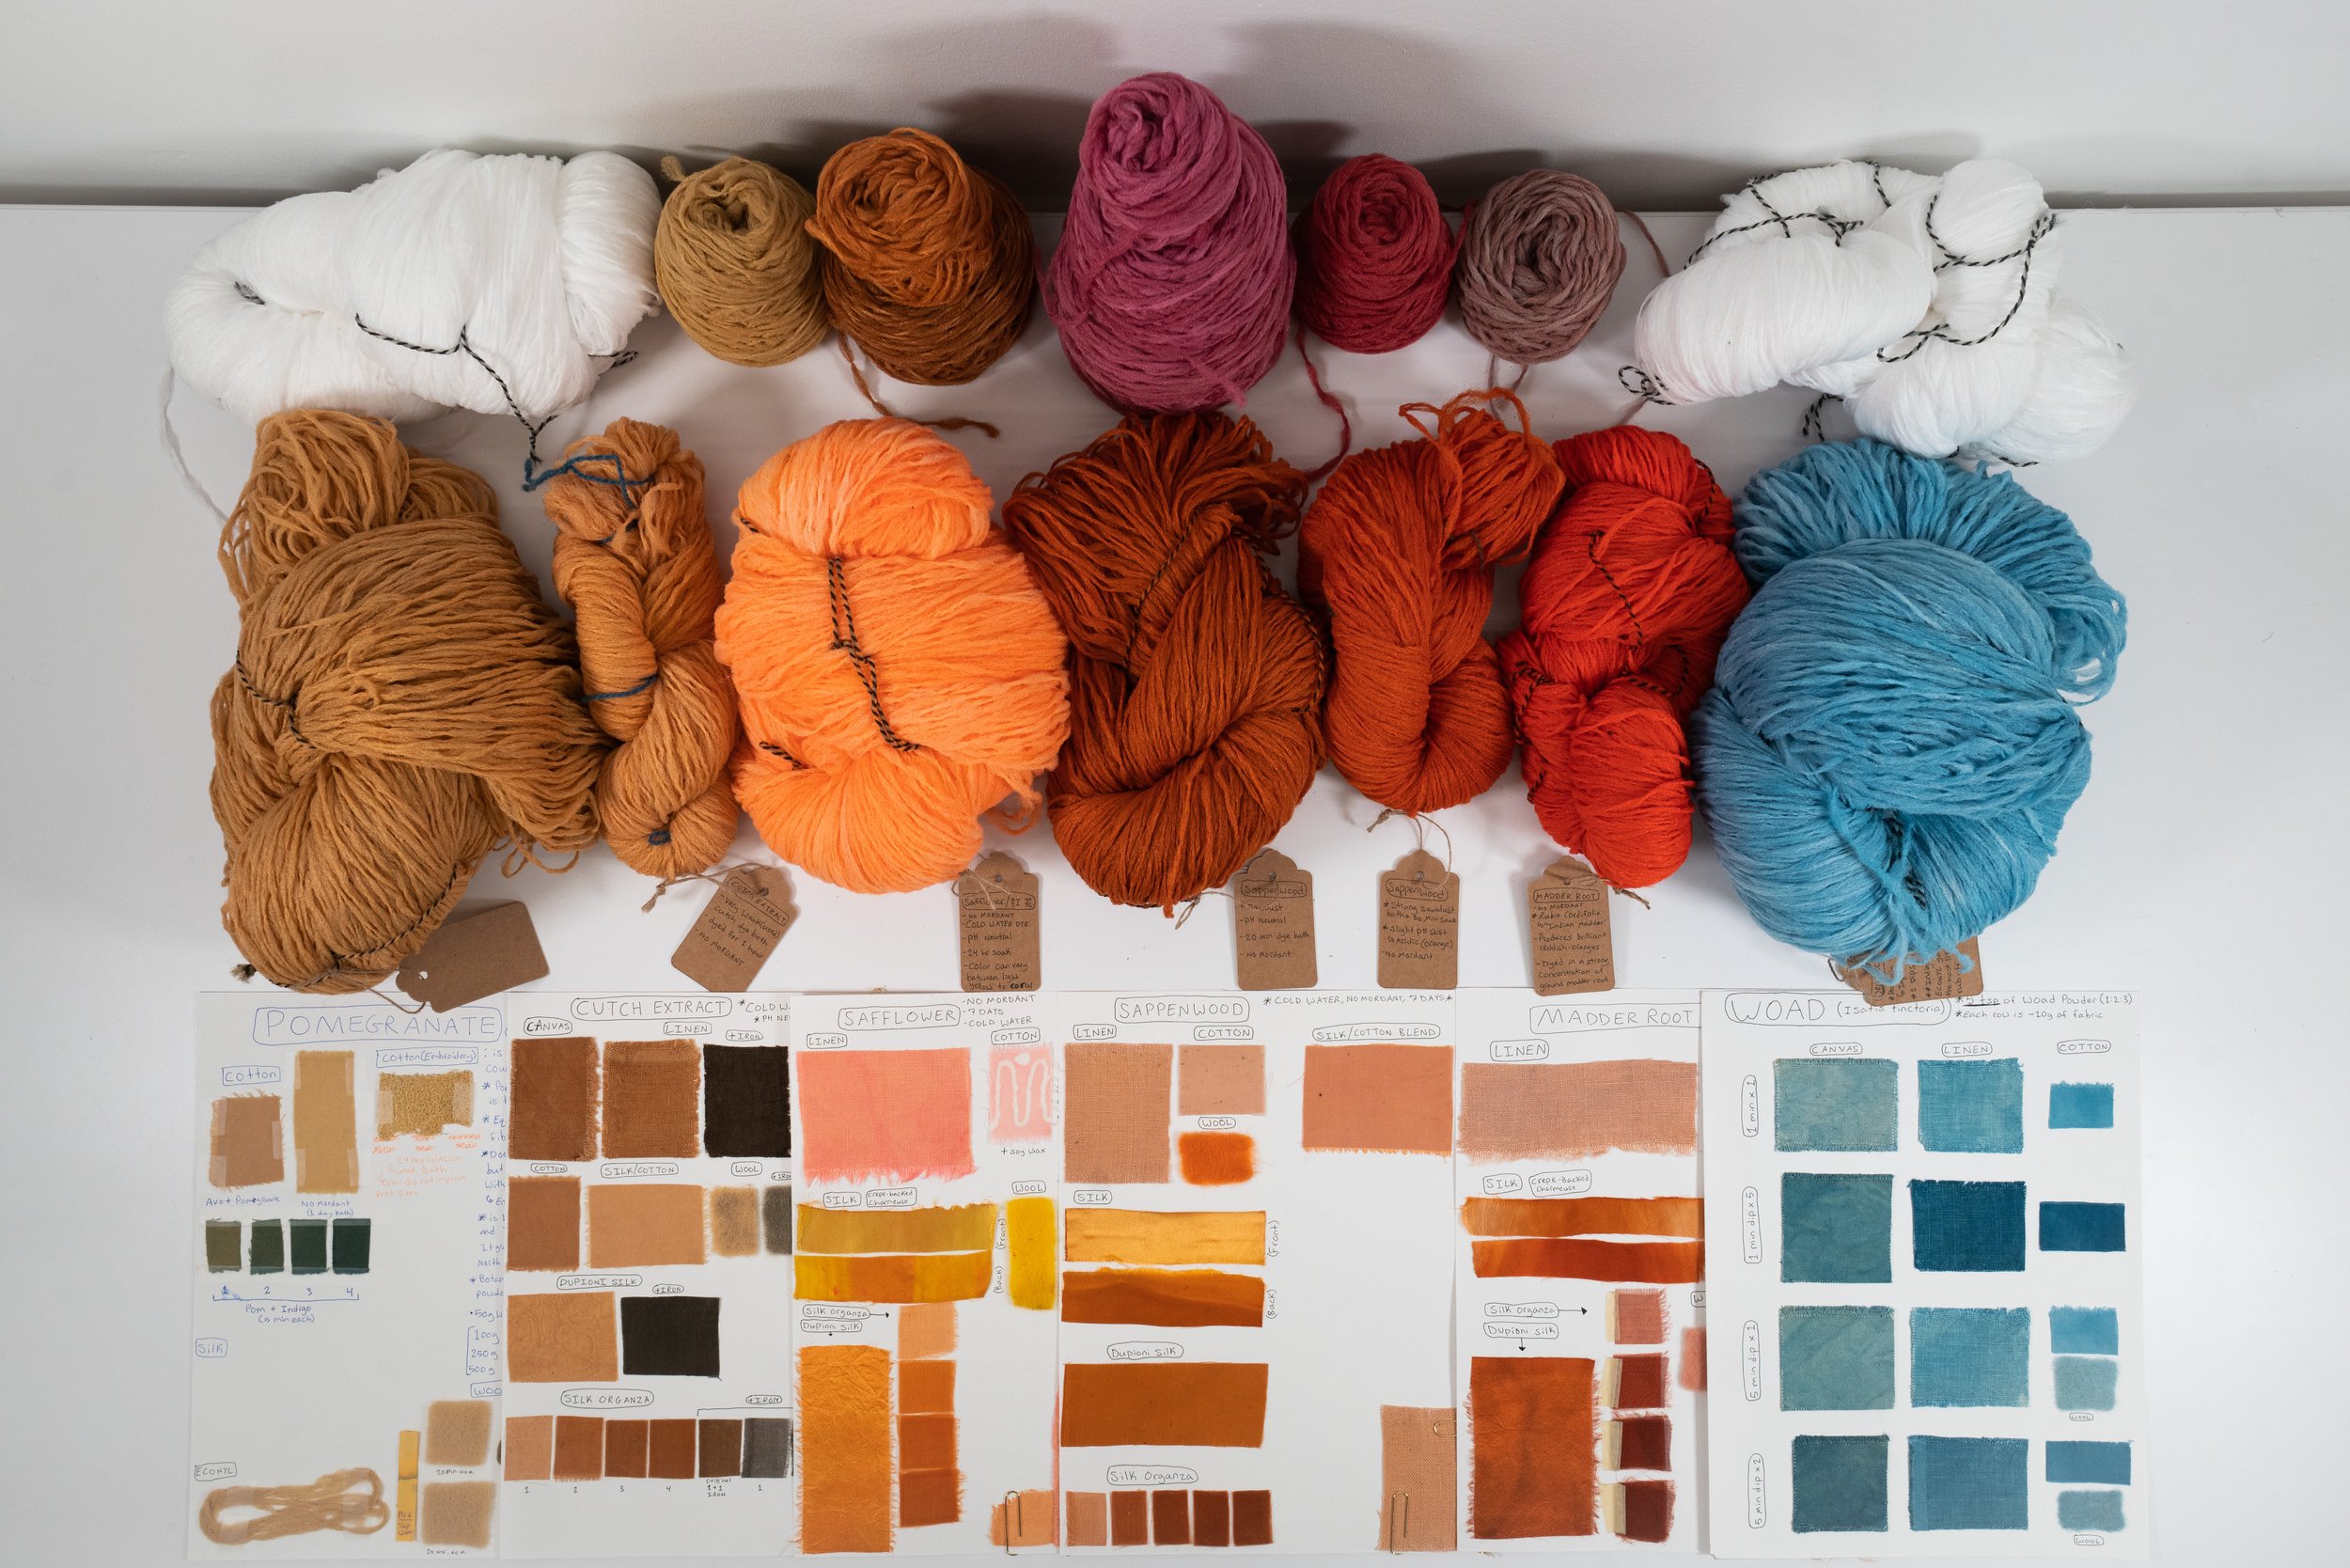 Natural Dyes on ECONYL Yarn (Regenerative Nylon Yarn)